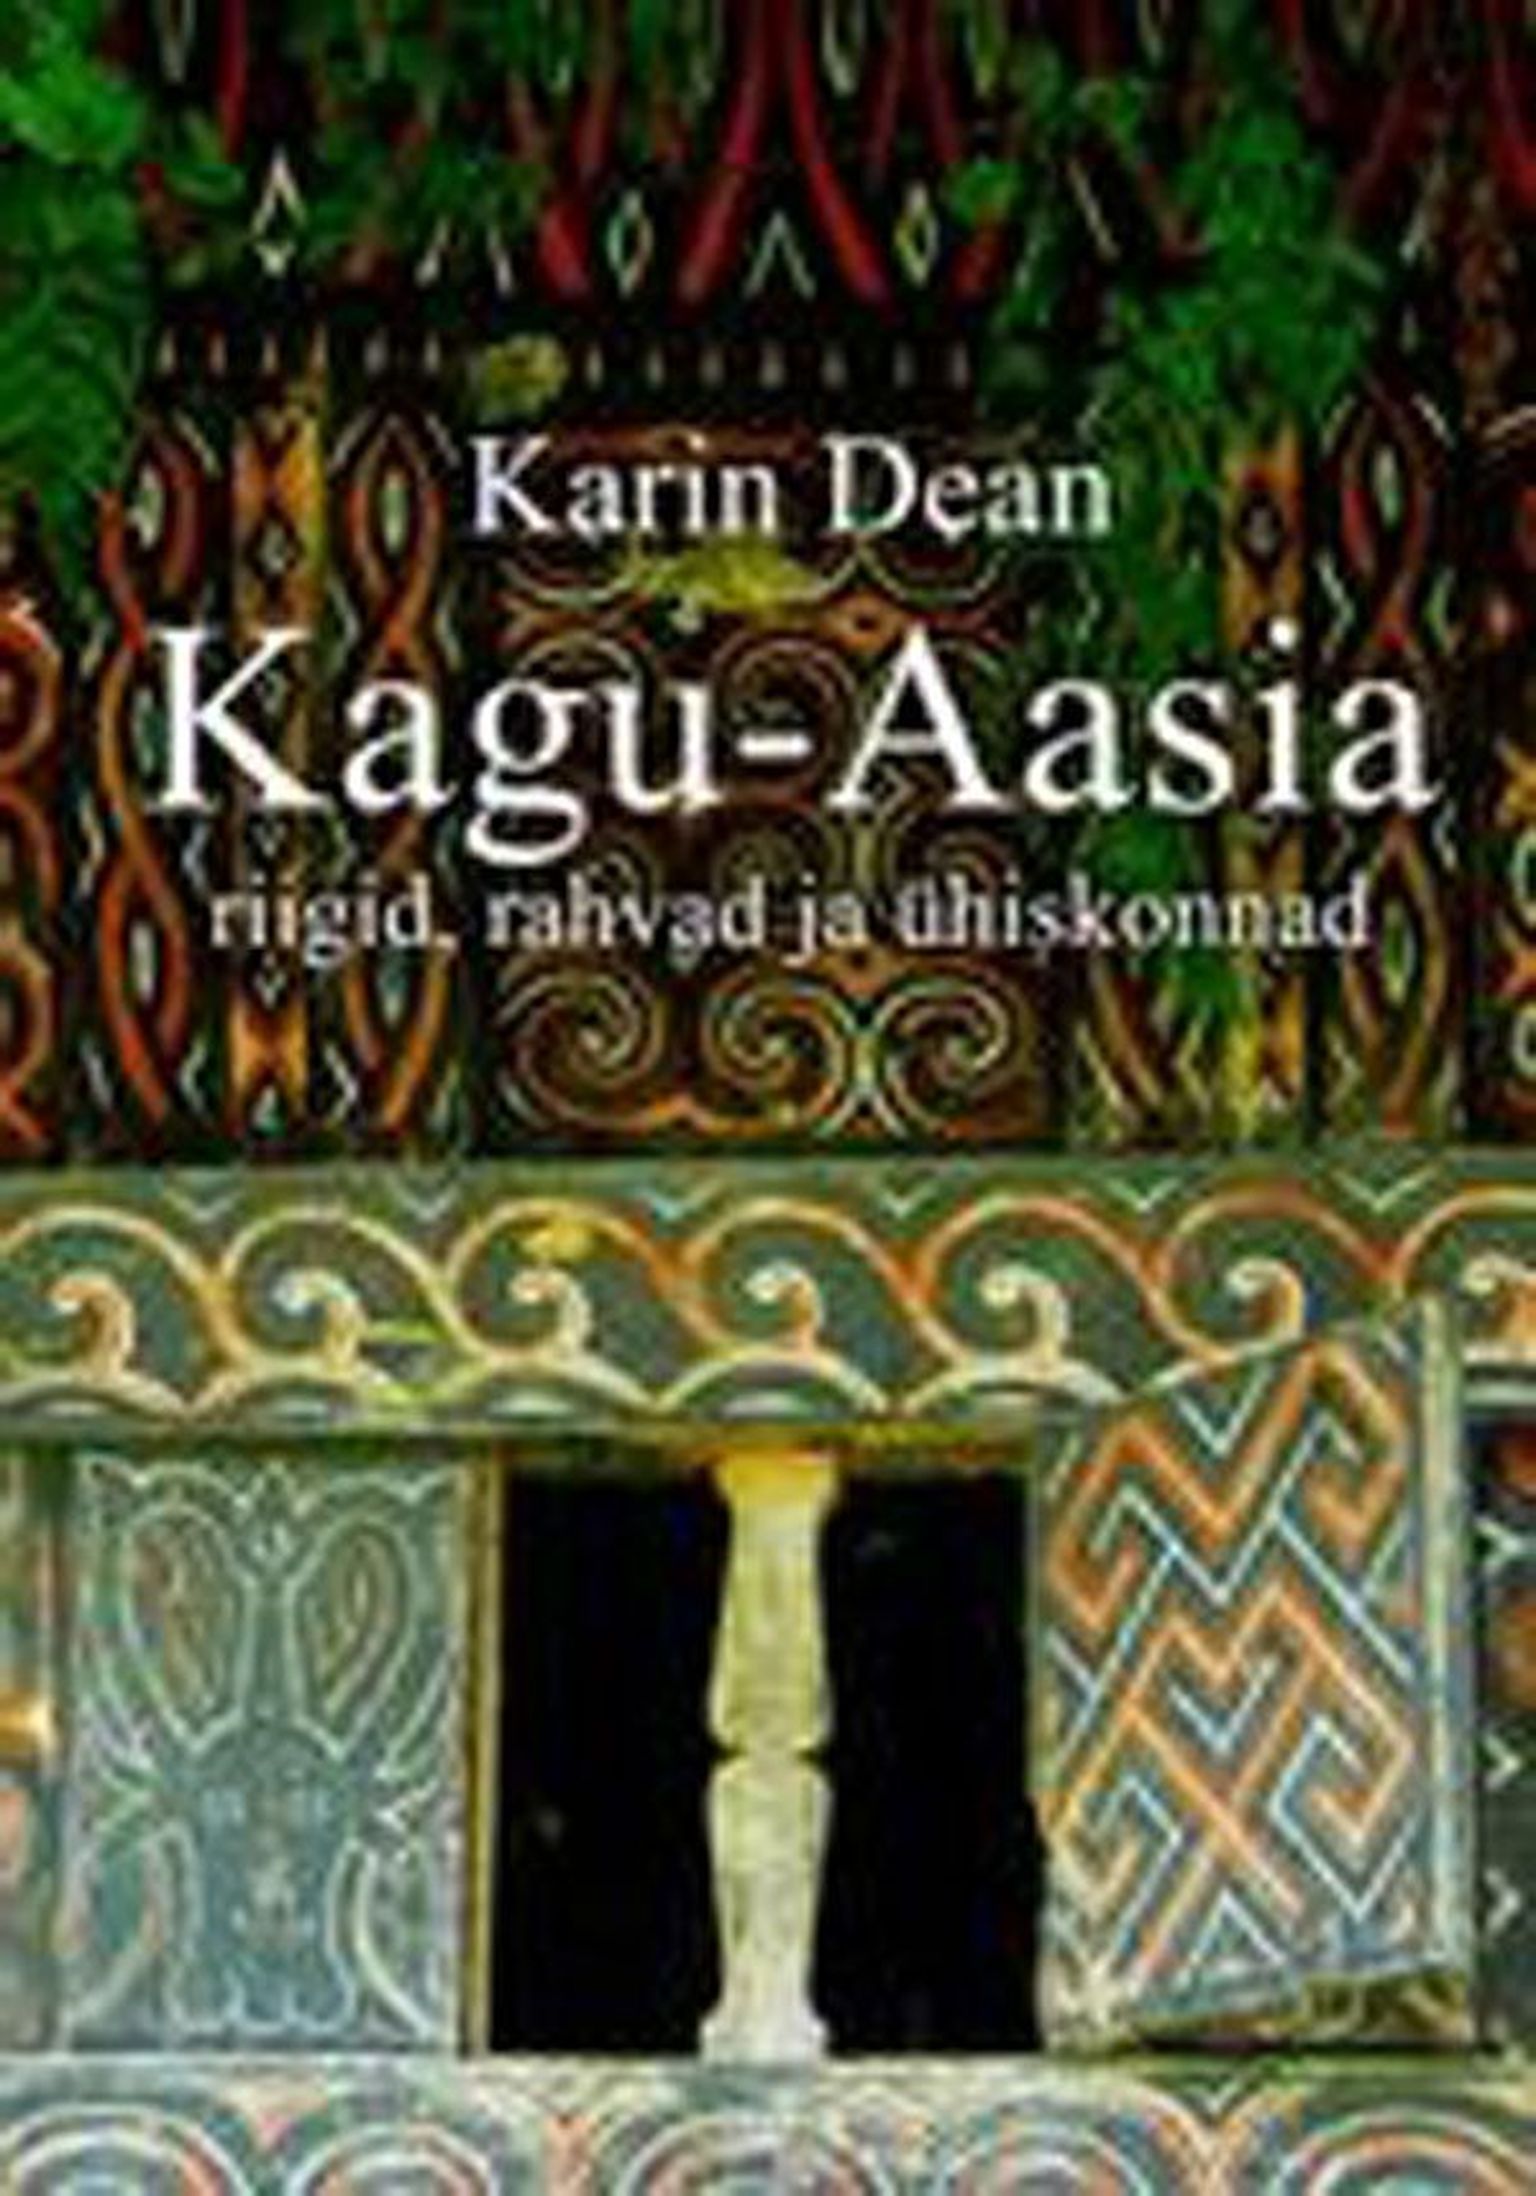 Raamat
Karin Dean
«Kagu-Aasia riigid, rahvad ja ühiskonnad»
Varrak 2013
517 lk